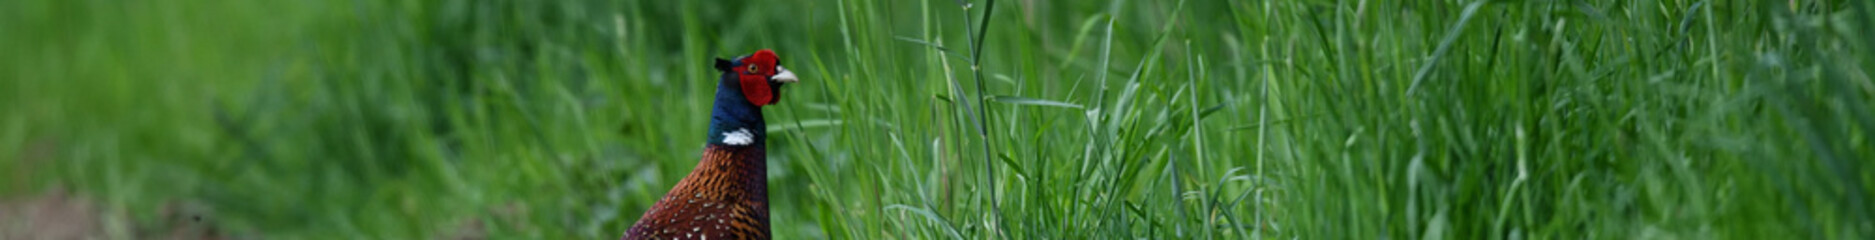 Hübsche Fasan Federn  im grünen Gras. Gemustertes Gefieder am Tier Vogelkopf vor unscharfem...